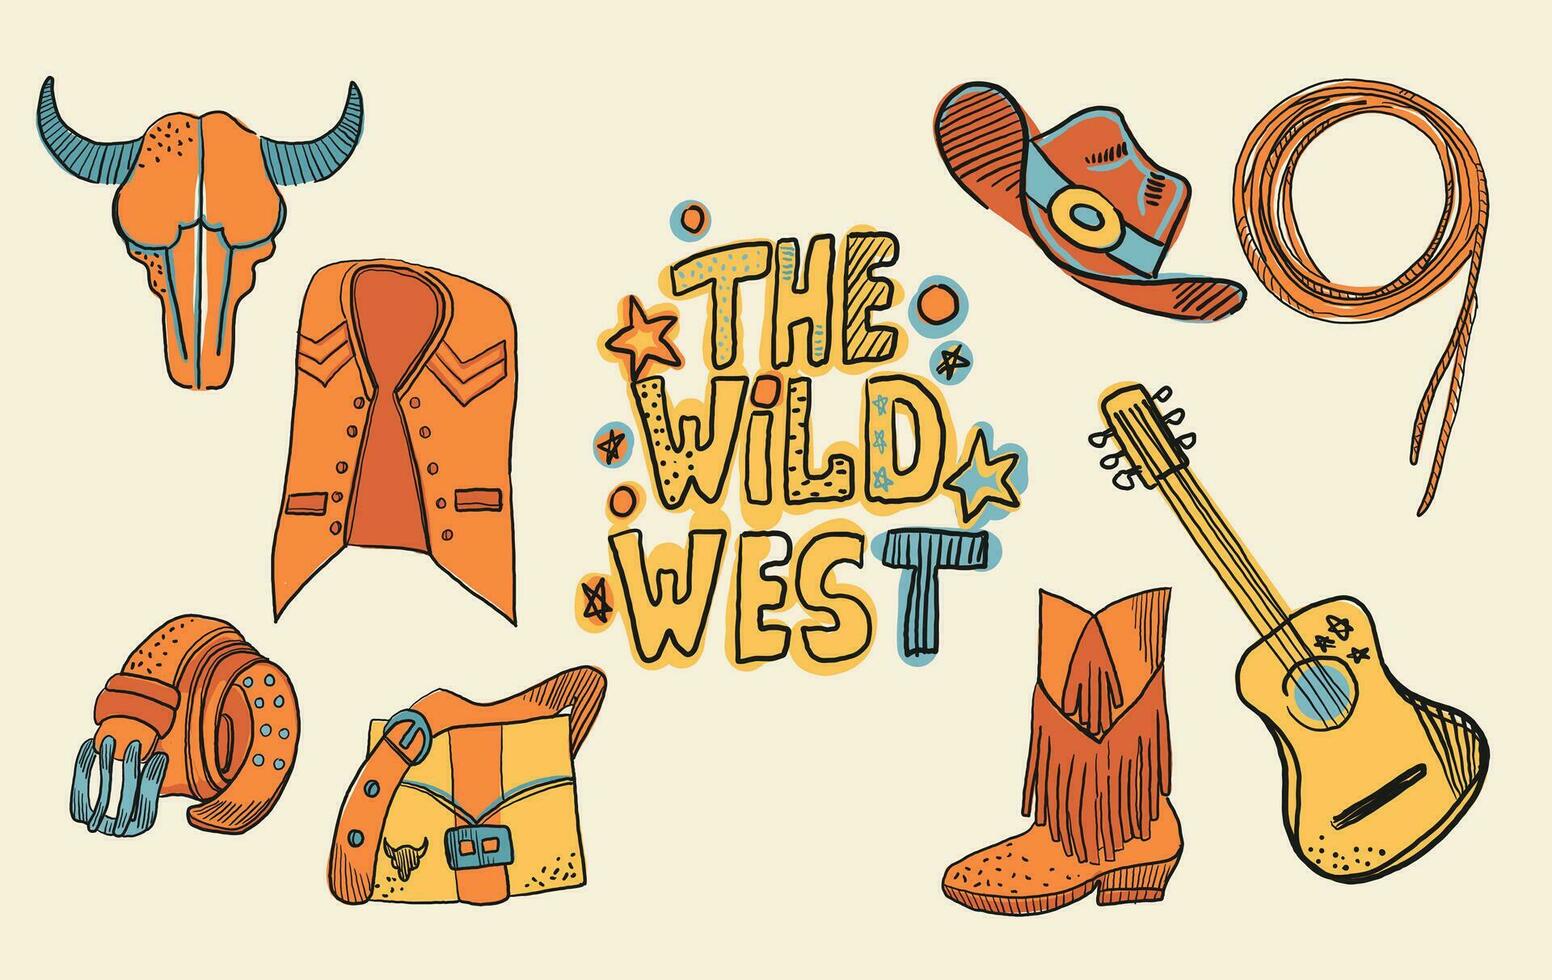 vaquero occidental tema salvaje Oeste concepto. incluye elementos tal como un toro cráneo, cinturón, guitarra, pérdida, sombrero, zapato, guitarra, bolsa, y chaleco. vector